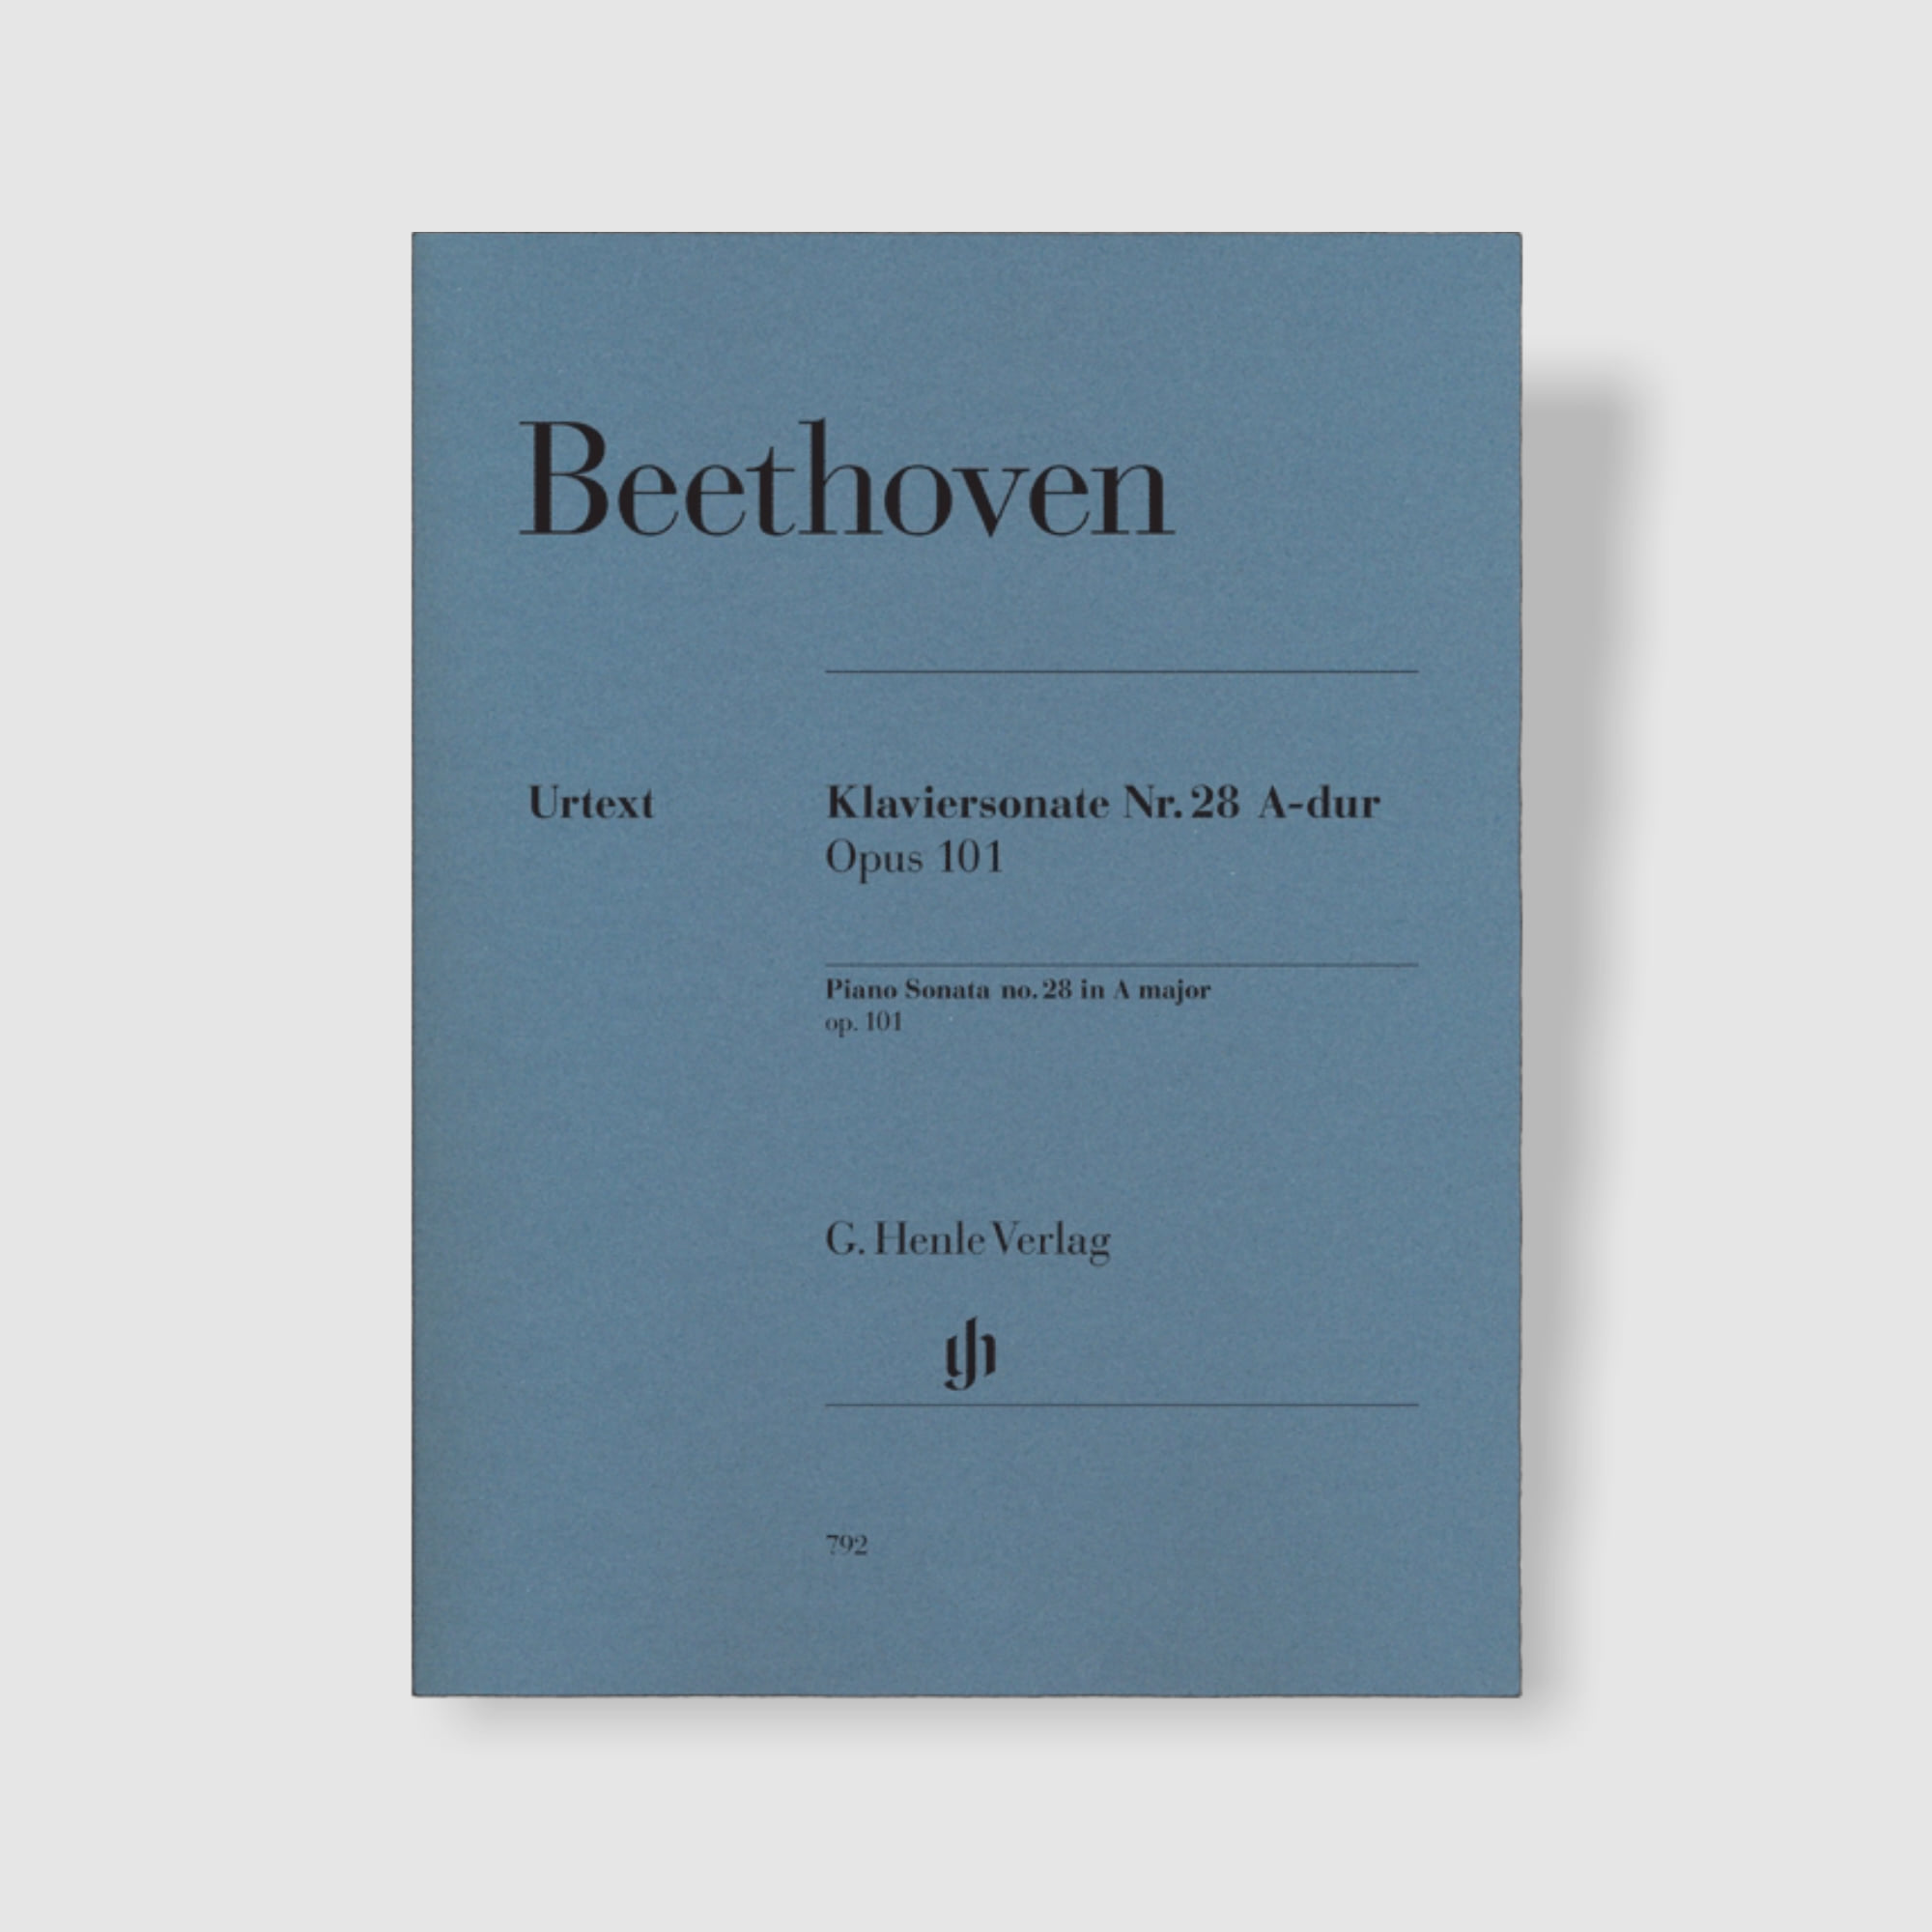 베토벤 피아노 소나타 No. 28 in A Major, Op. 101